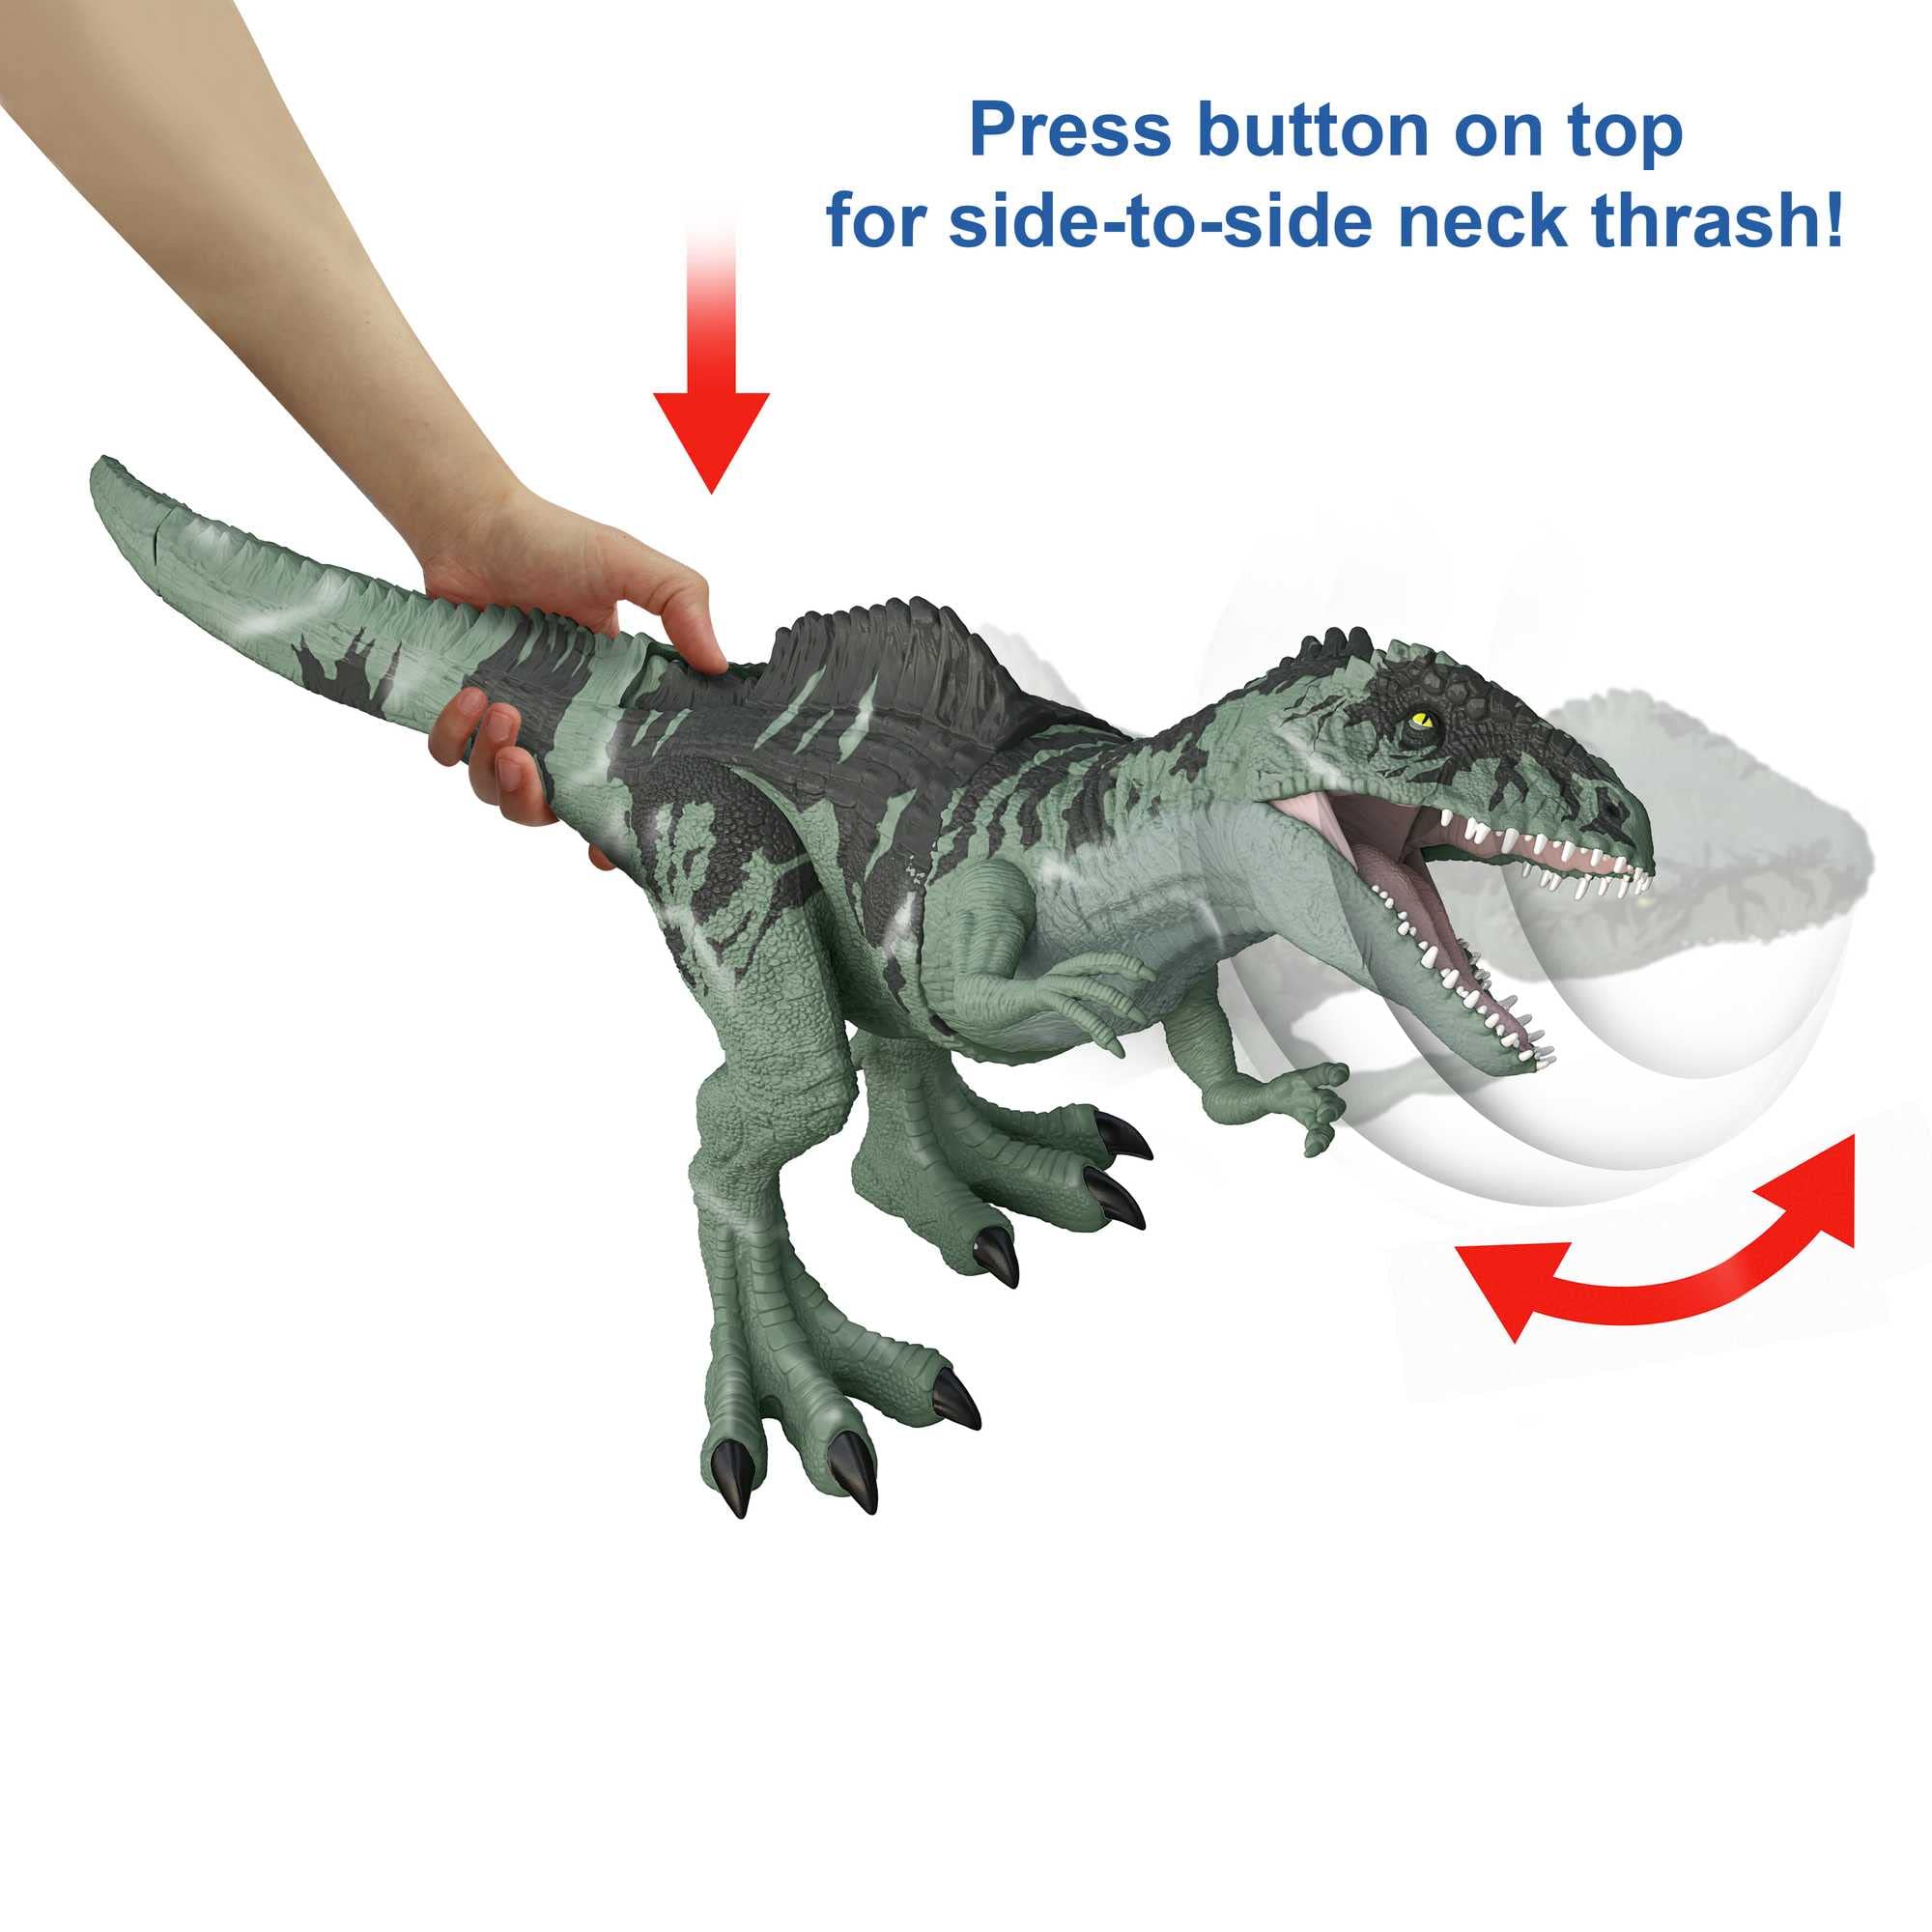 Jurassic World Dominion Dinosaur Toy: Bạn là fan của loạt phim Jurassic World? Hãy thưởng thức các sản phẩm đồ chơi dưới dạng khủng long trong phim, cùng trải nghiệm những cảm giác hồi hộp và kỳ diệu nhất khi tận mắt thấy con khủng long \